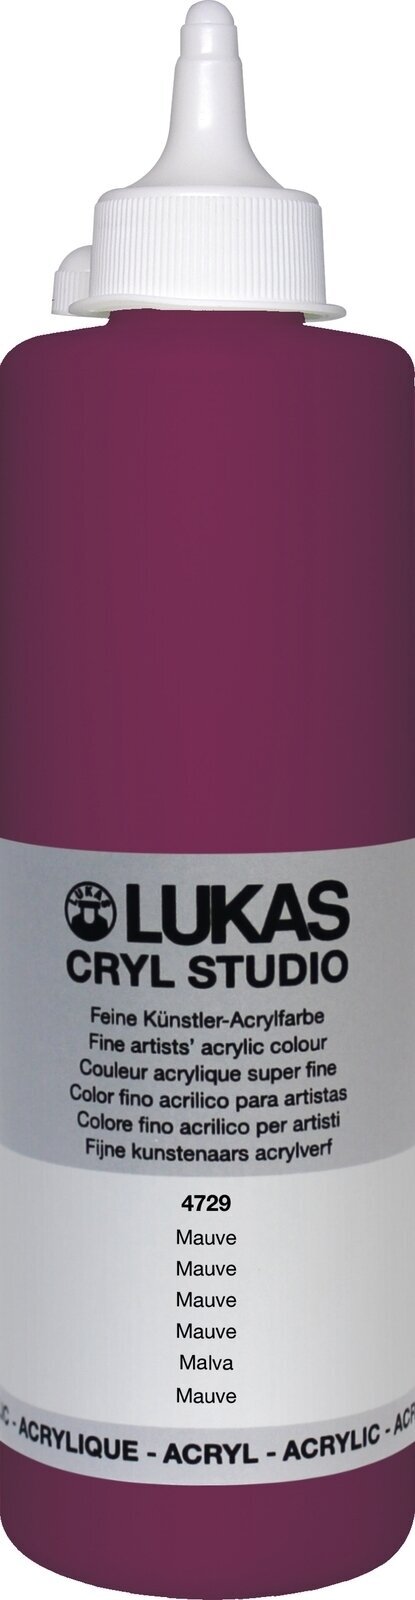 Peinture acrylique Lukas Cryl Studio Acrylic Paint Plastic Bottle Peinture acrylique Mauve 500 ml 1 pc